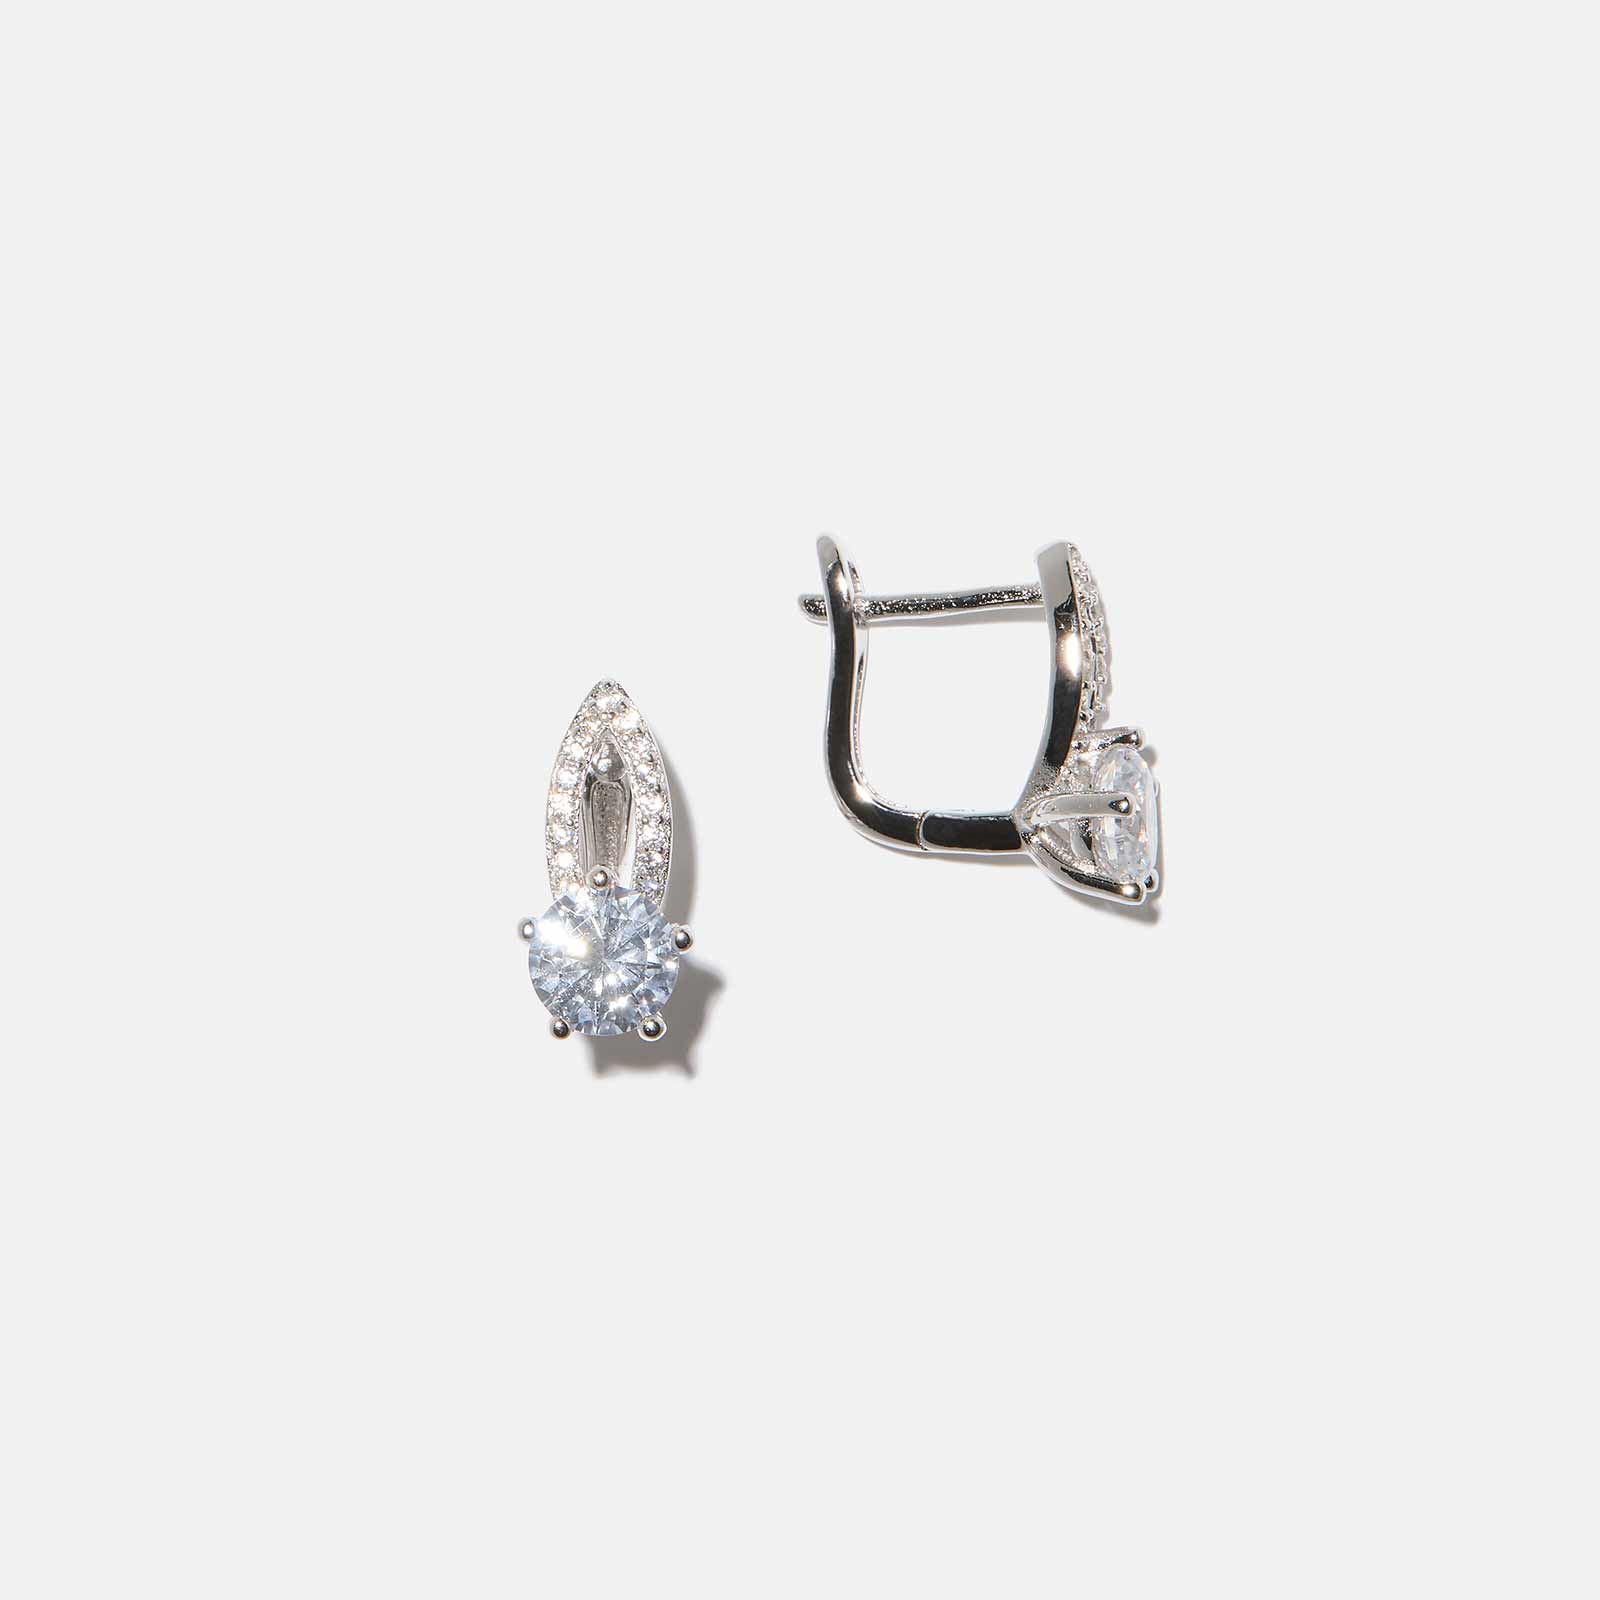 Örhängen i äkta silver - bågar, vita stenar, 14mm